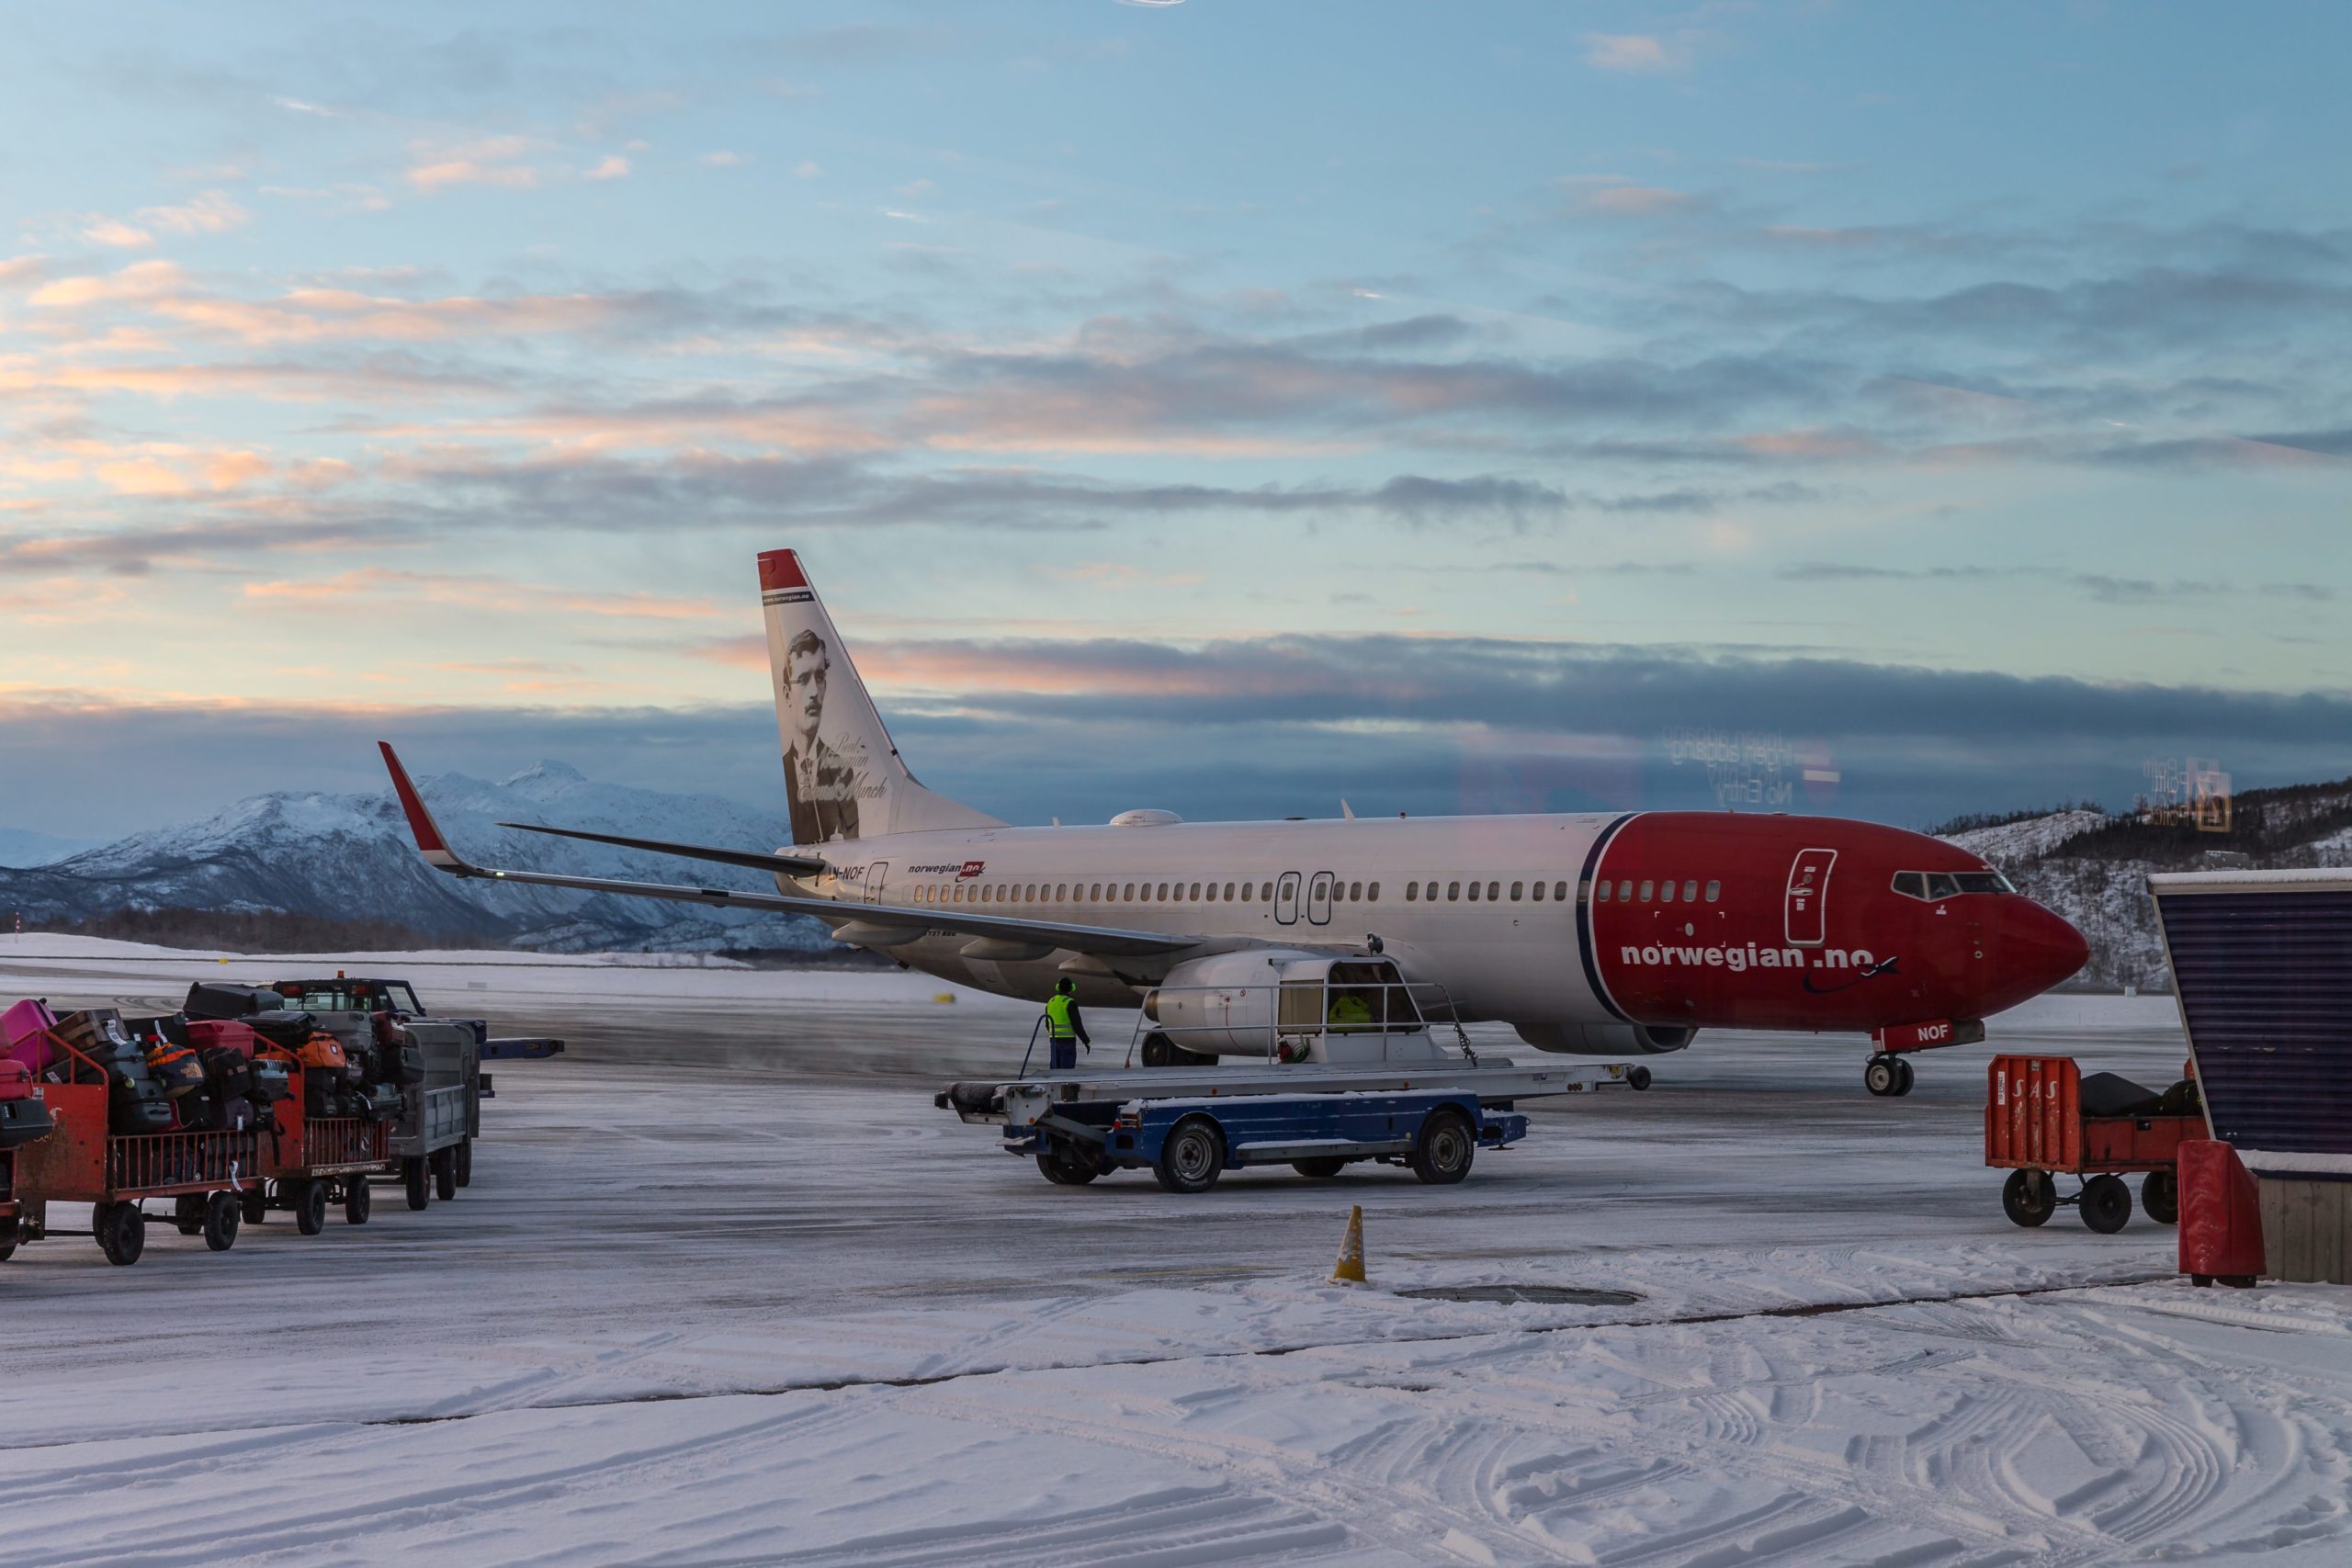 Die Maschine der Norwegian Air wird hier auf dem Flugplatz von Harstad gezeigt